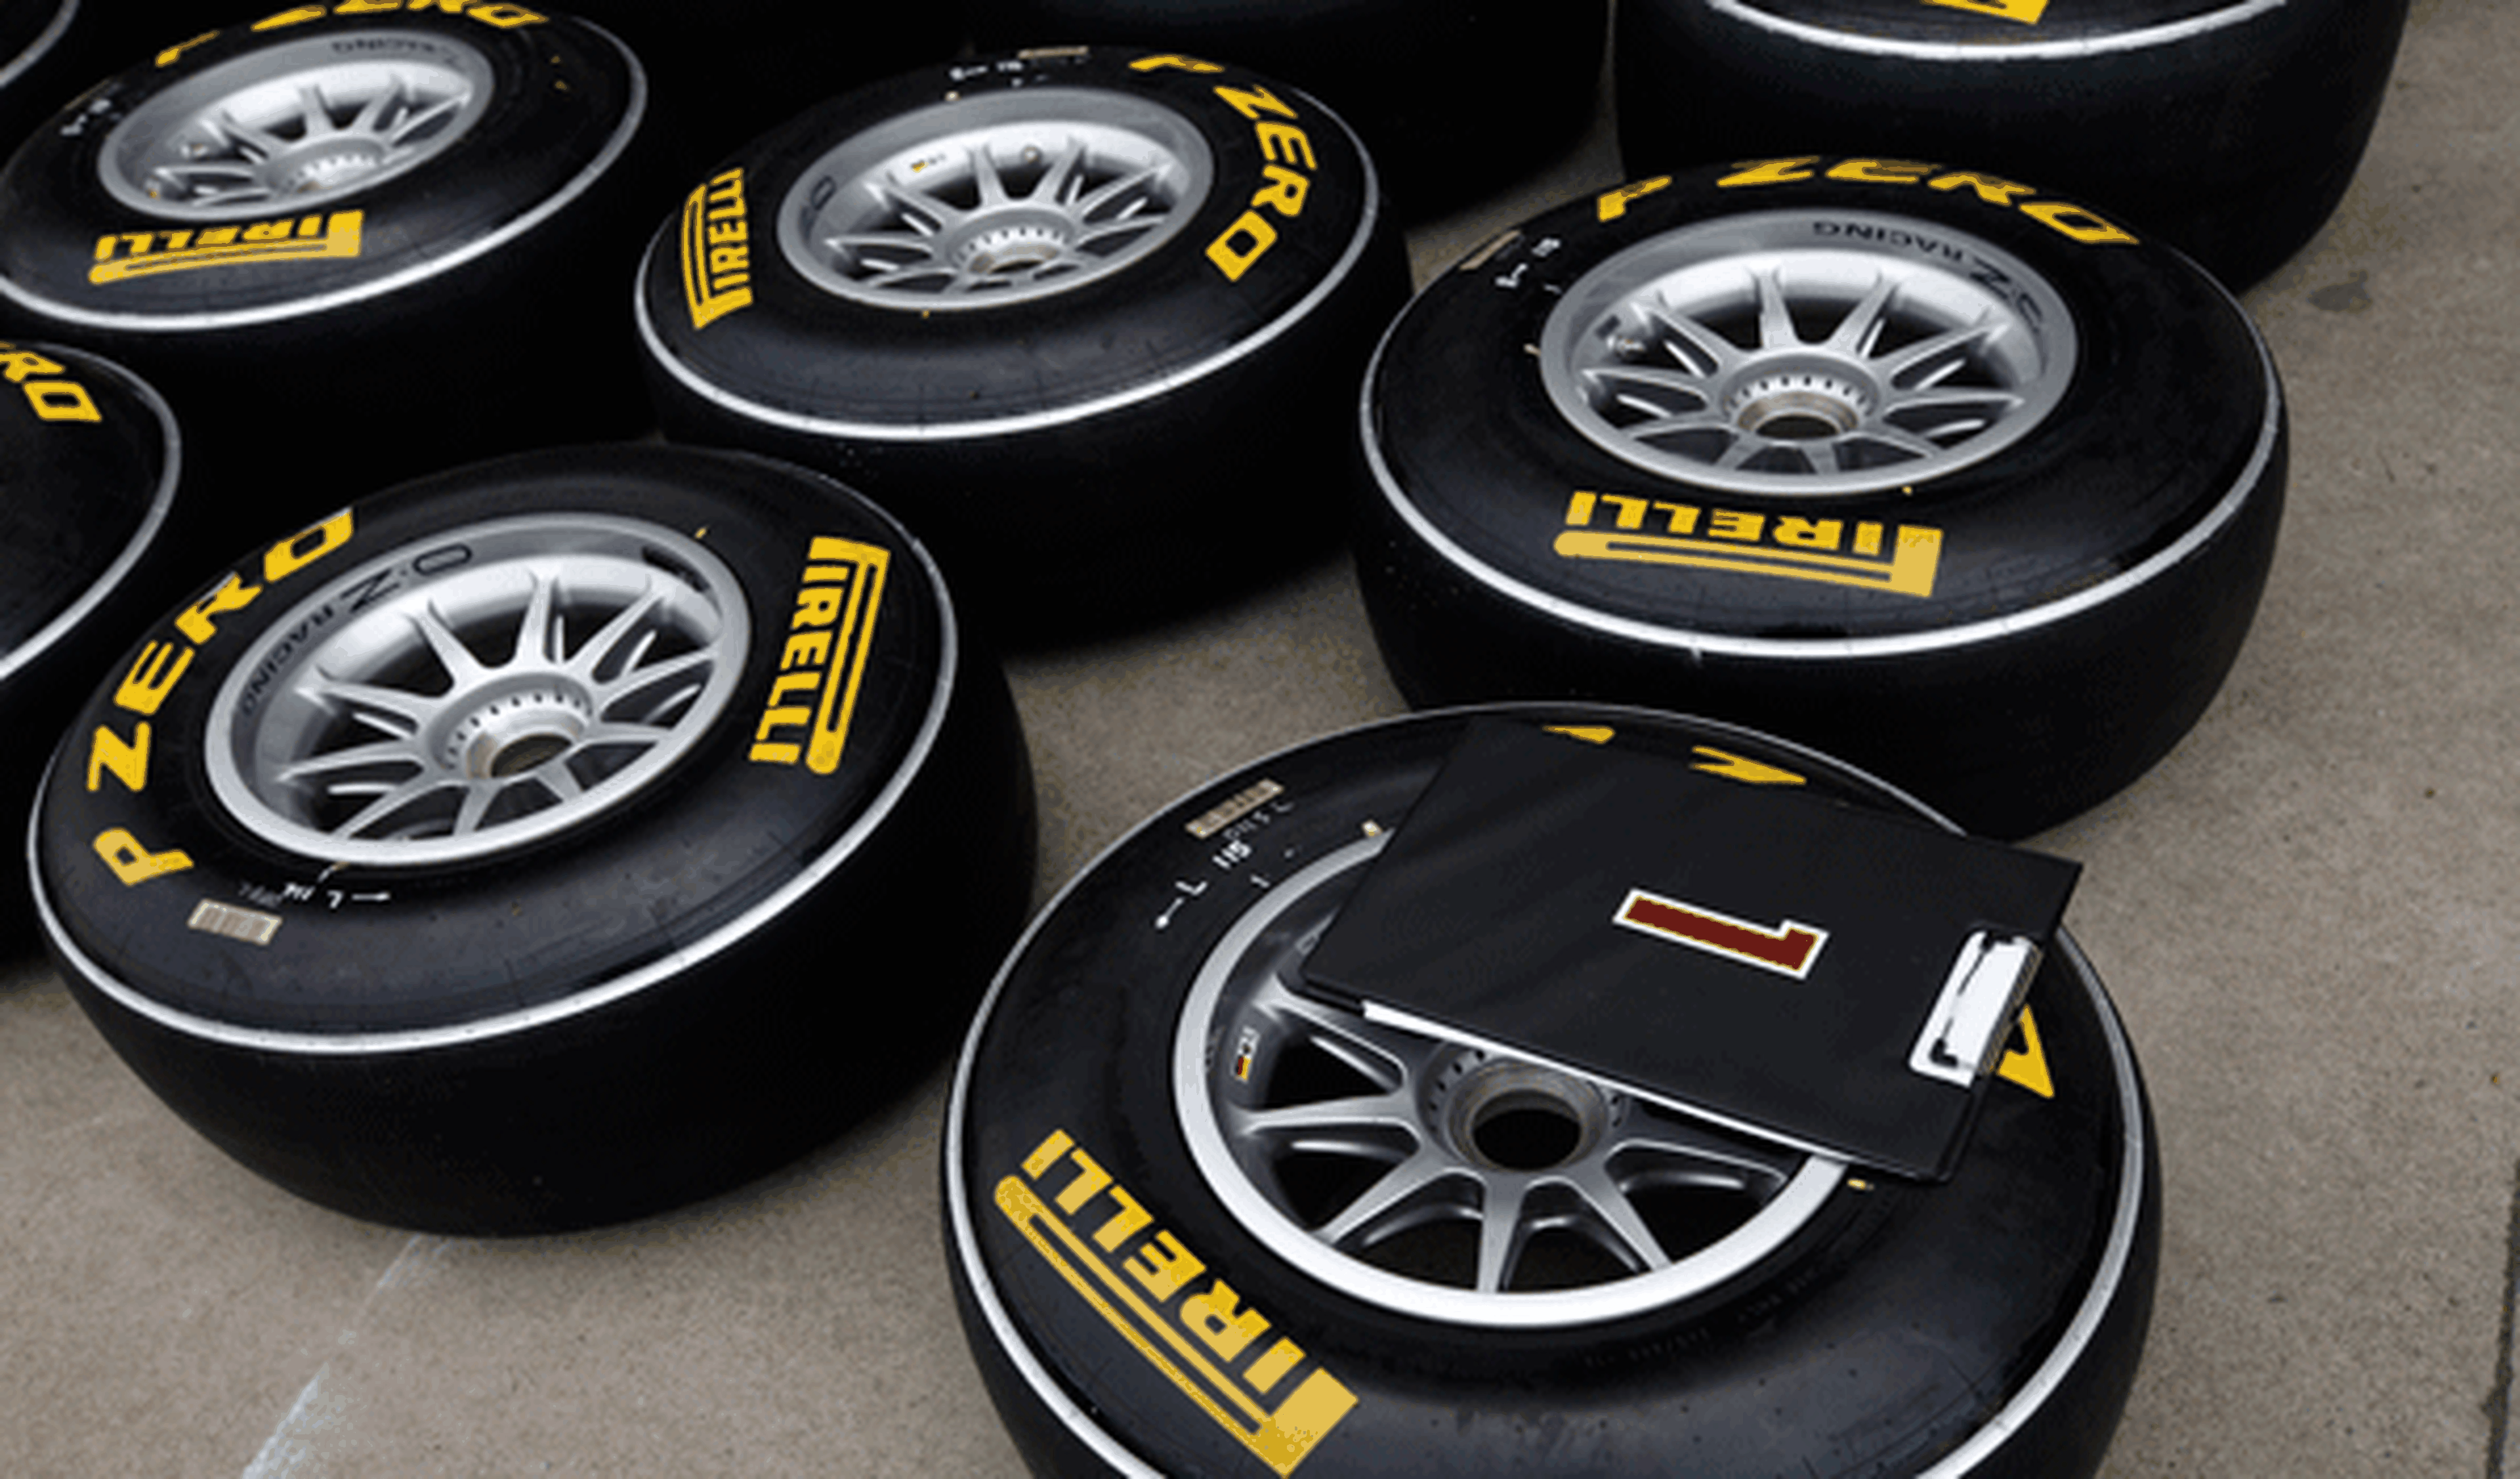 Neumáticos - Pirelli - GP China